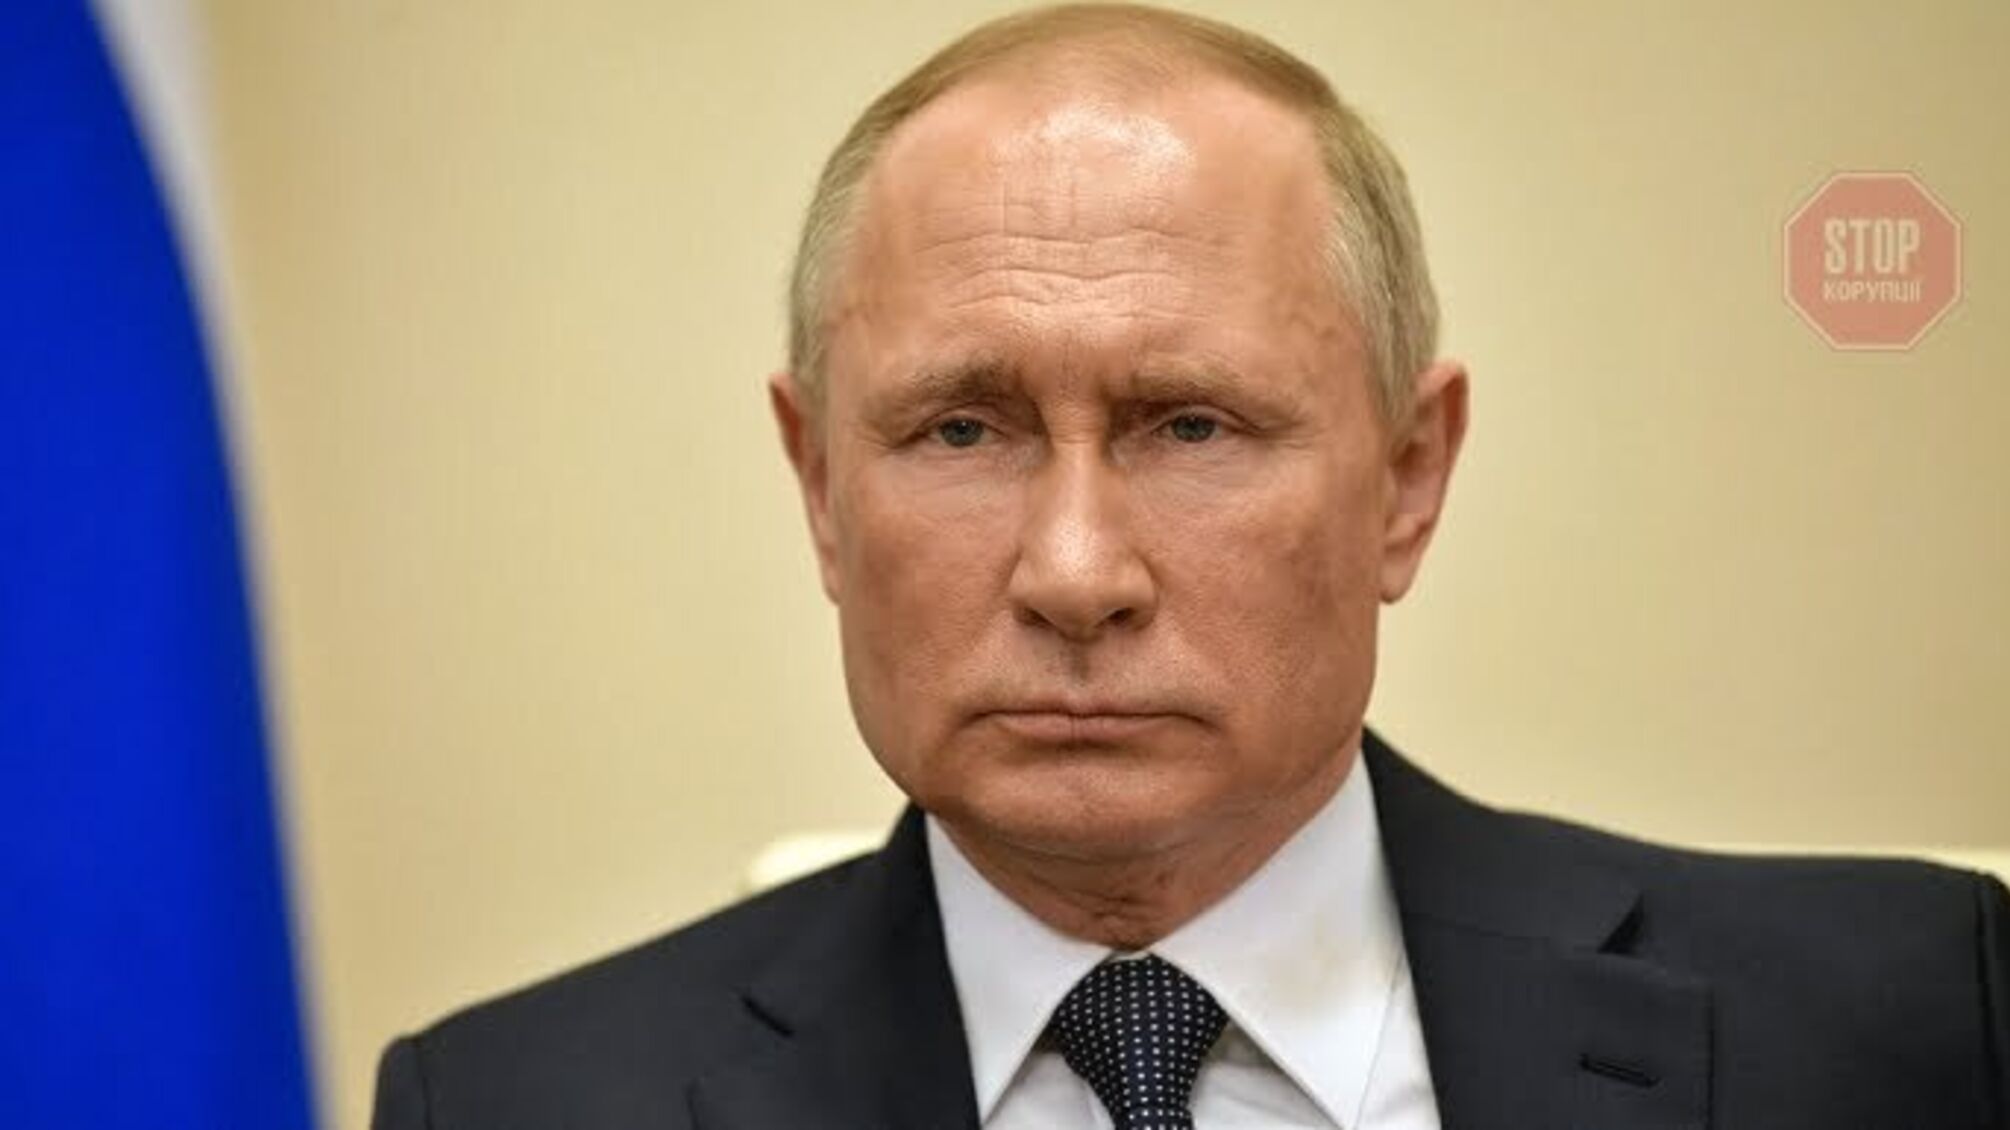 Путін наказав перевірити готовність військ на кордоні з Україною